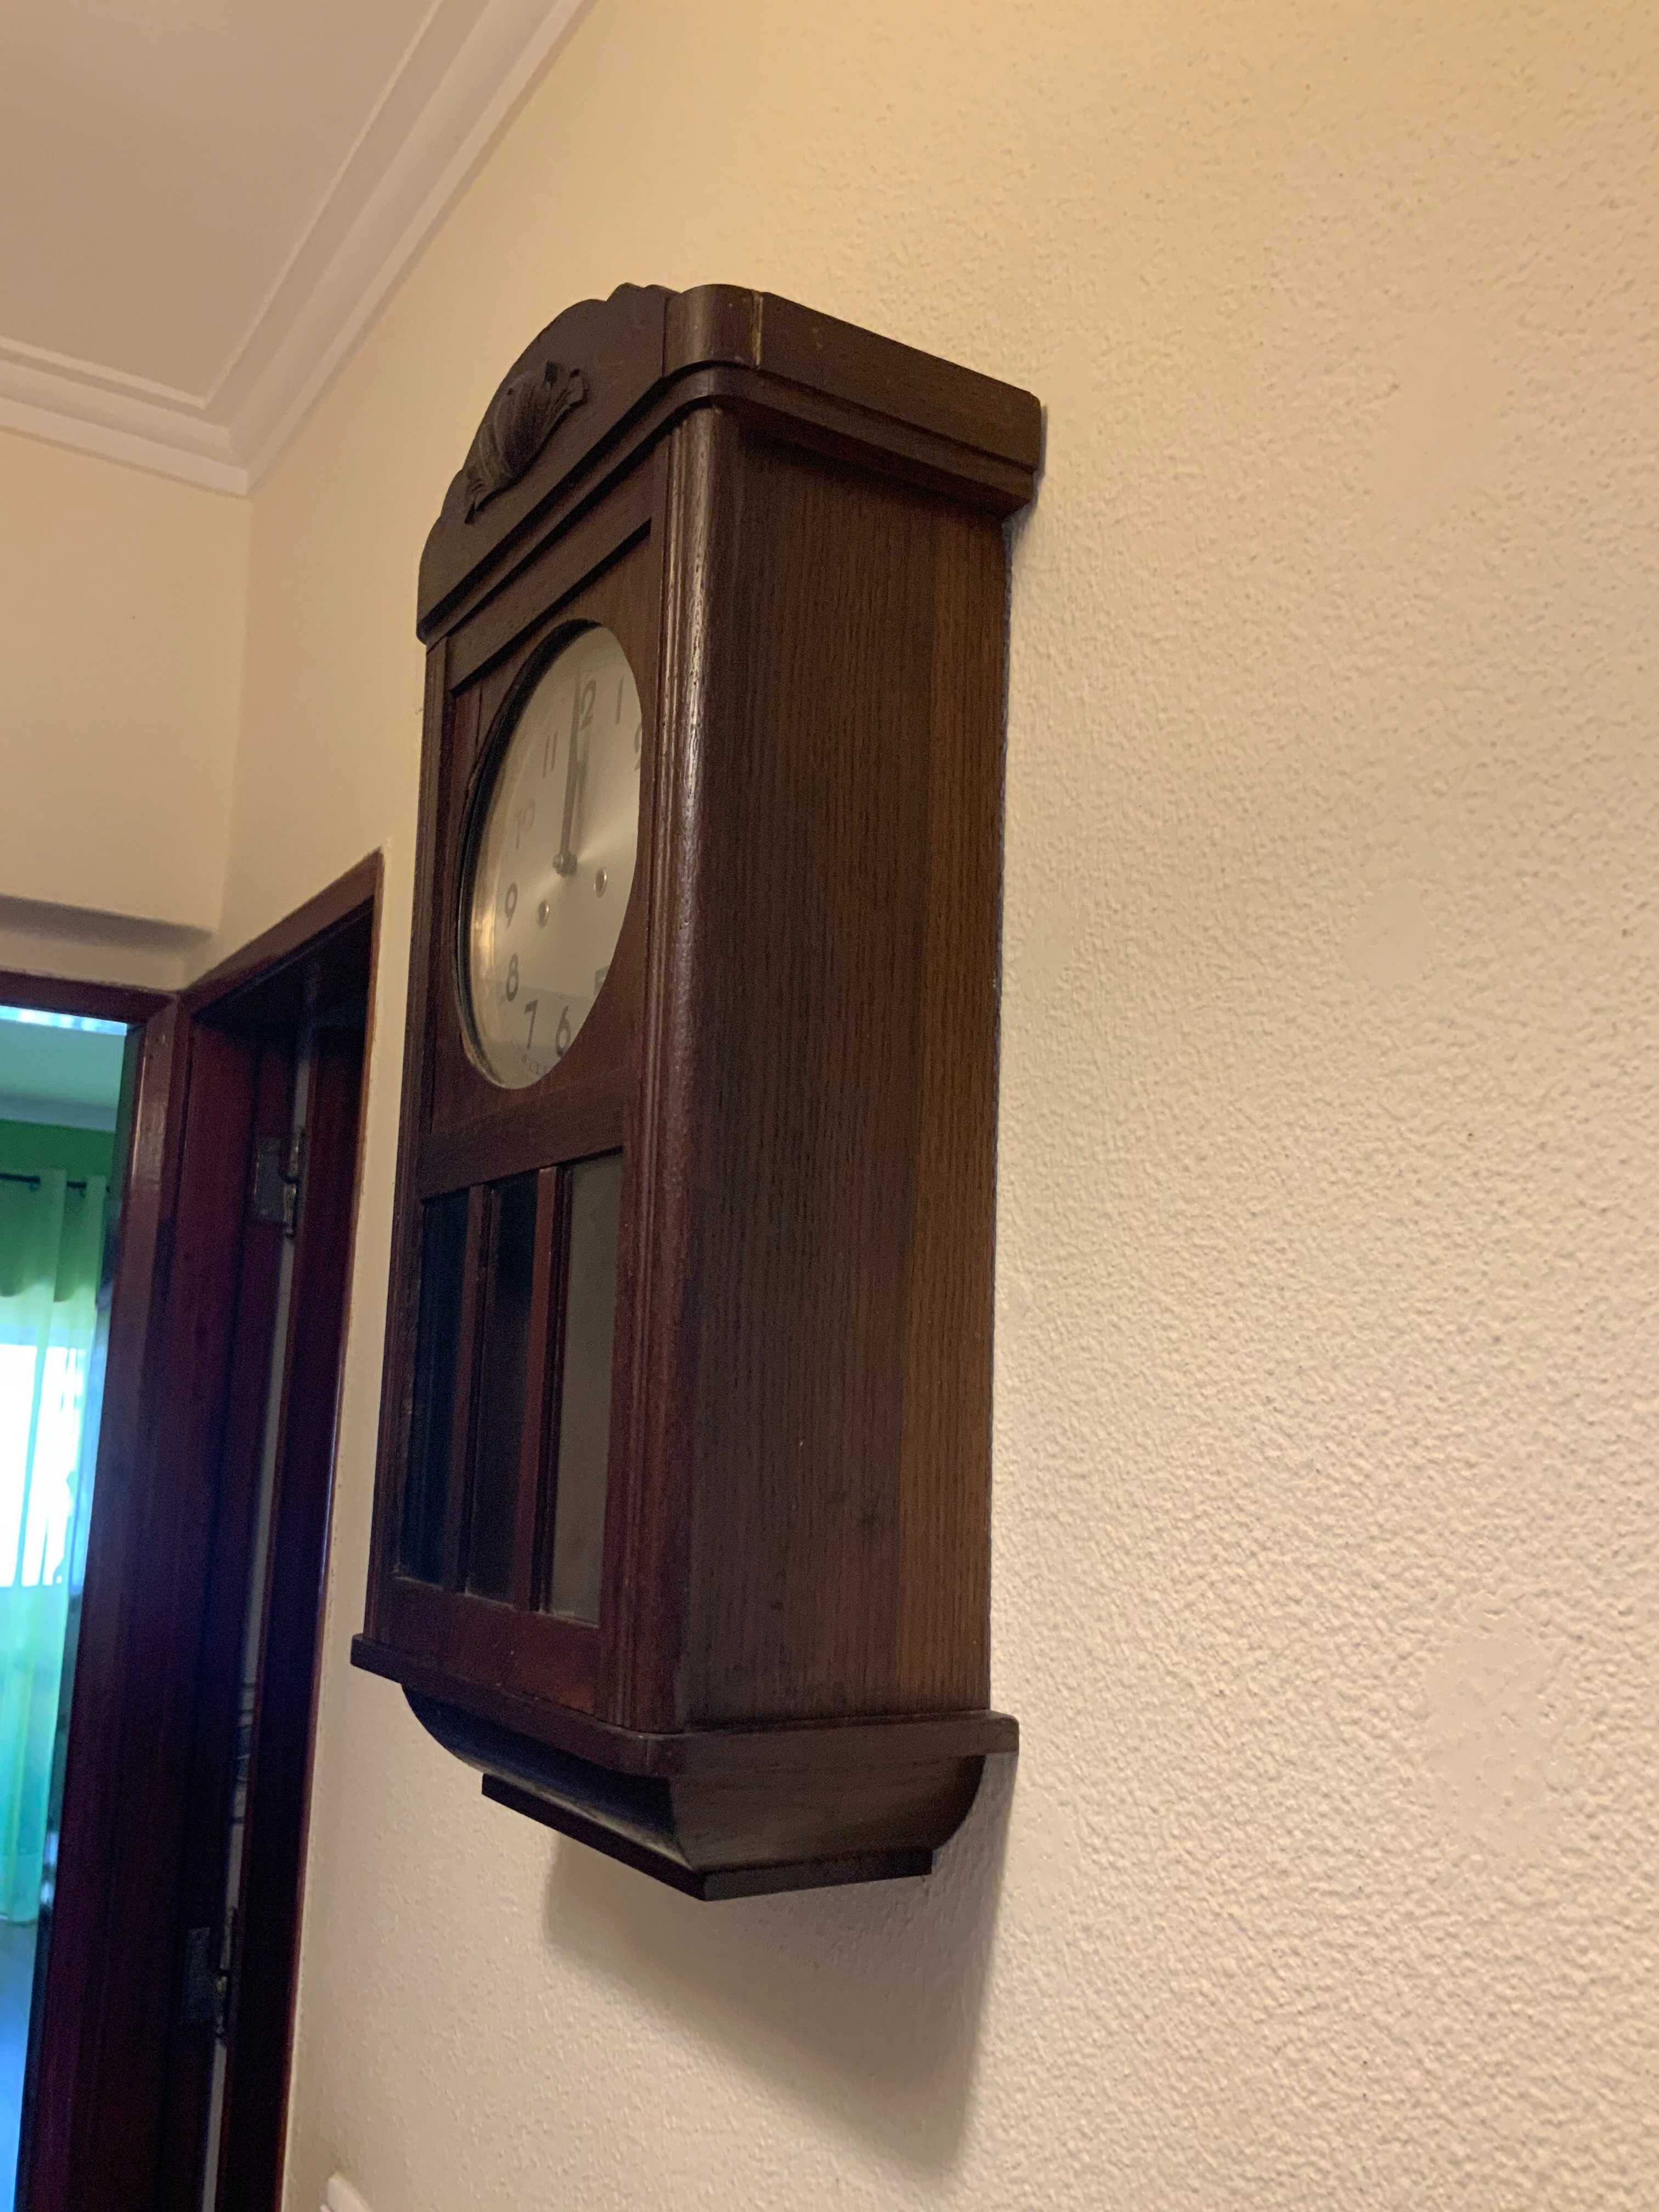 Relógio de parede com 60 anos.